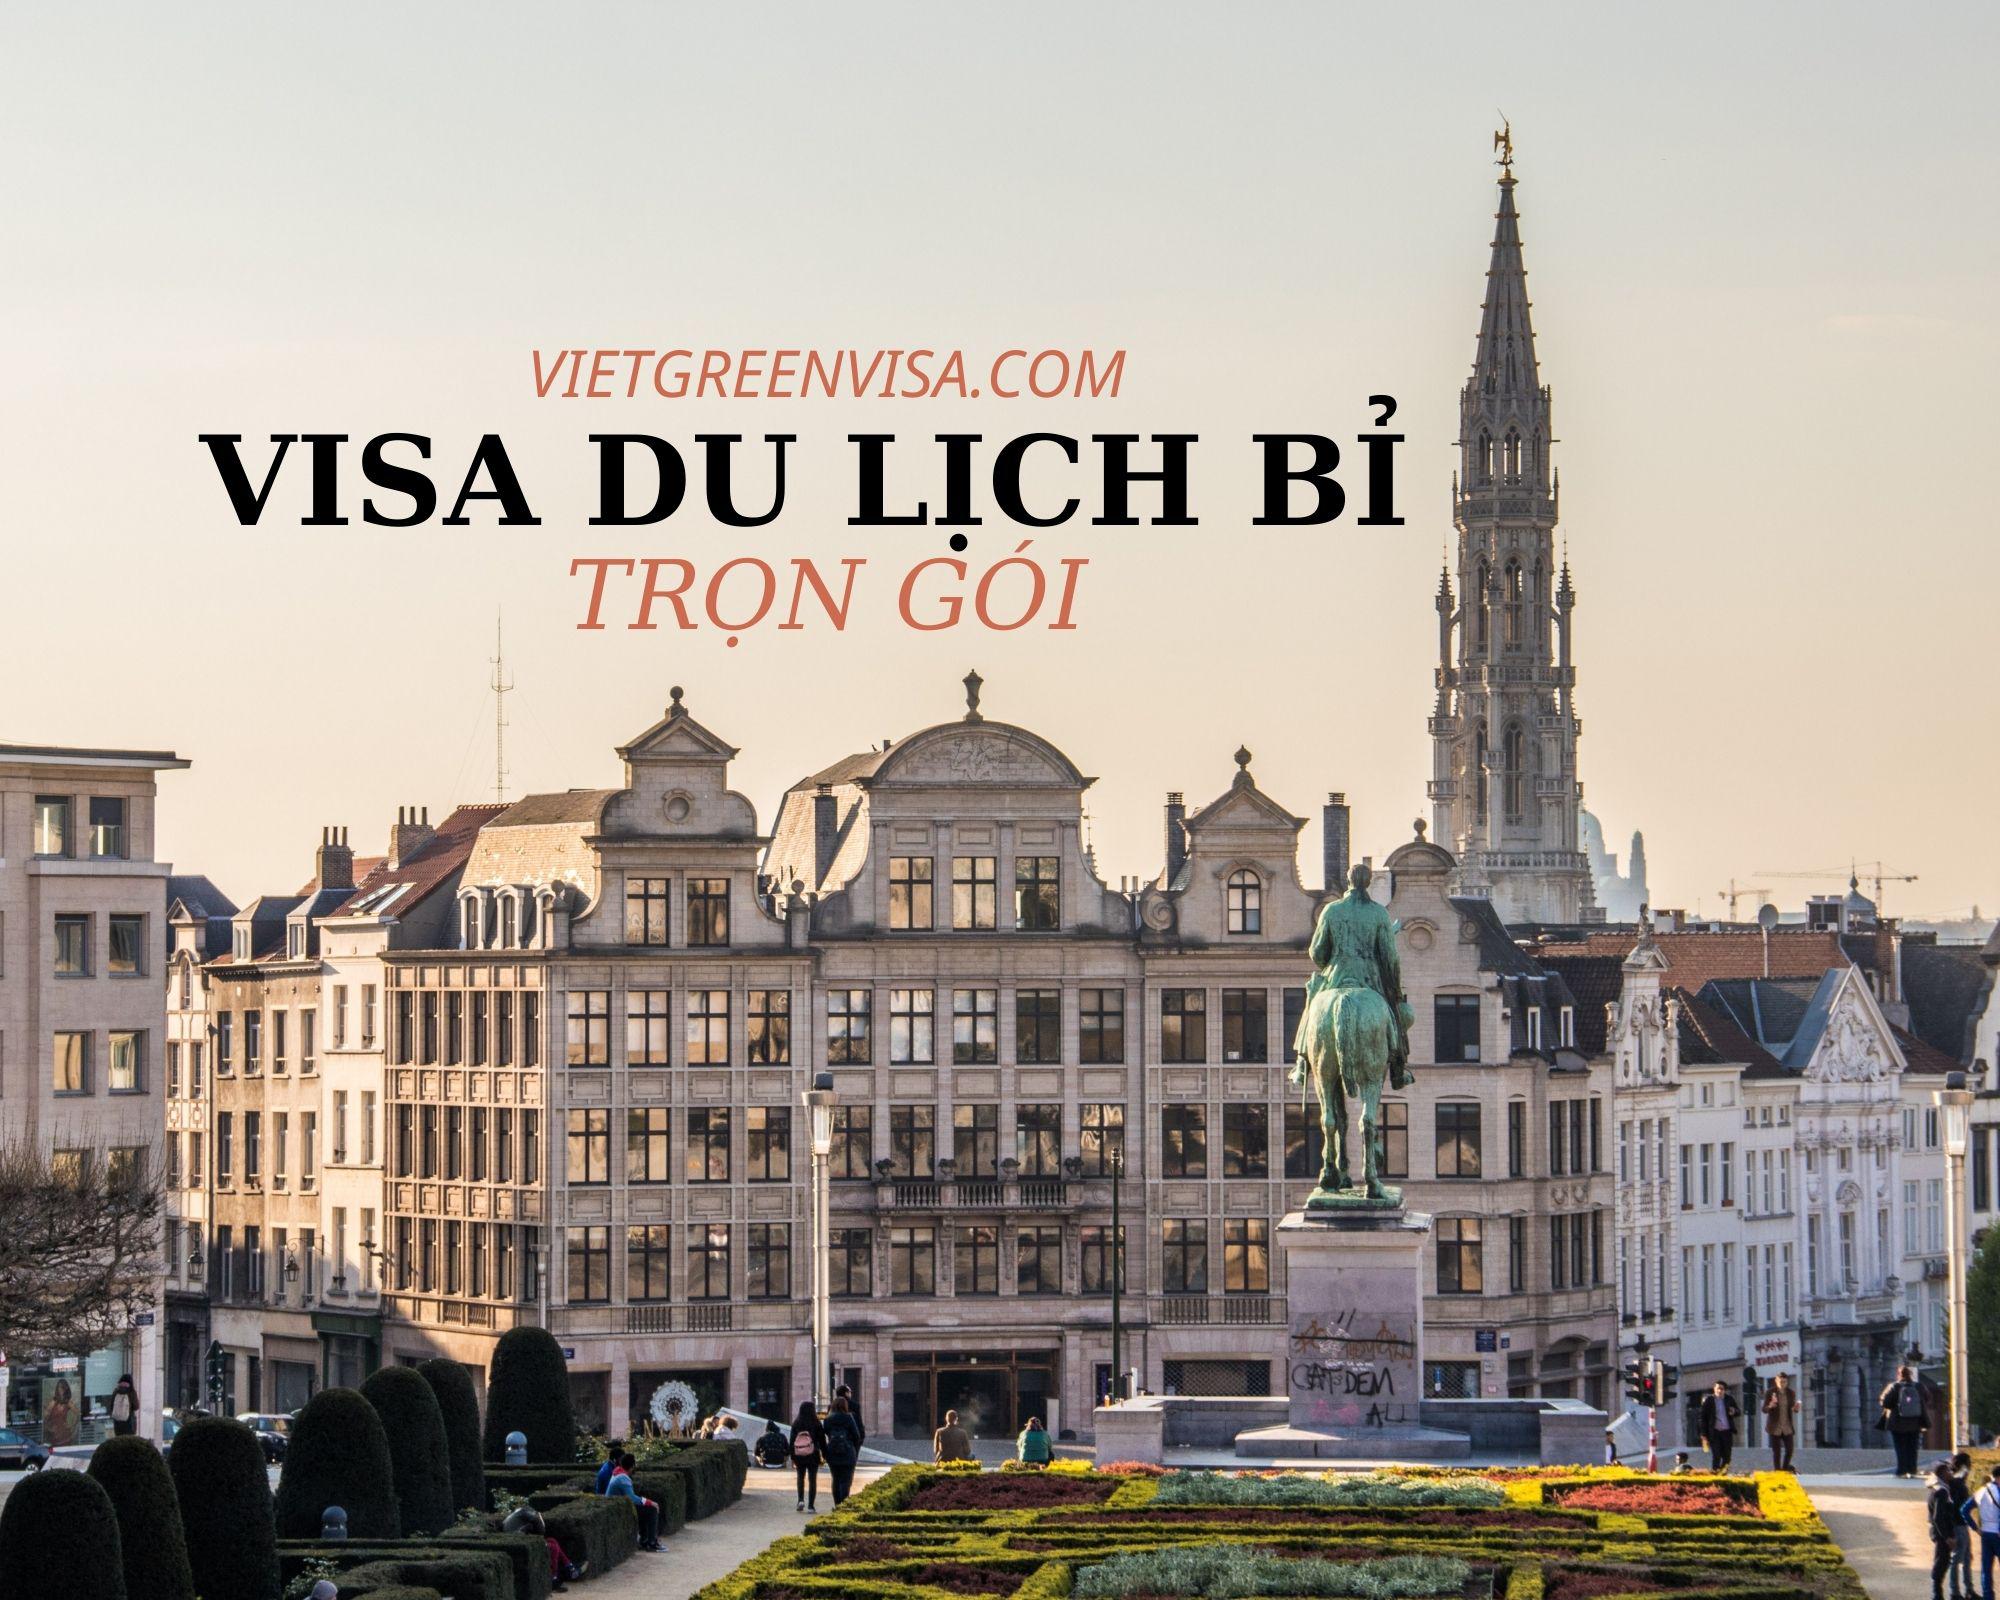 Hỗ trợ tư vấn xin visa du lịch Bỉ trọn gói